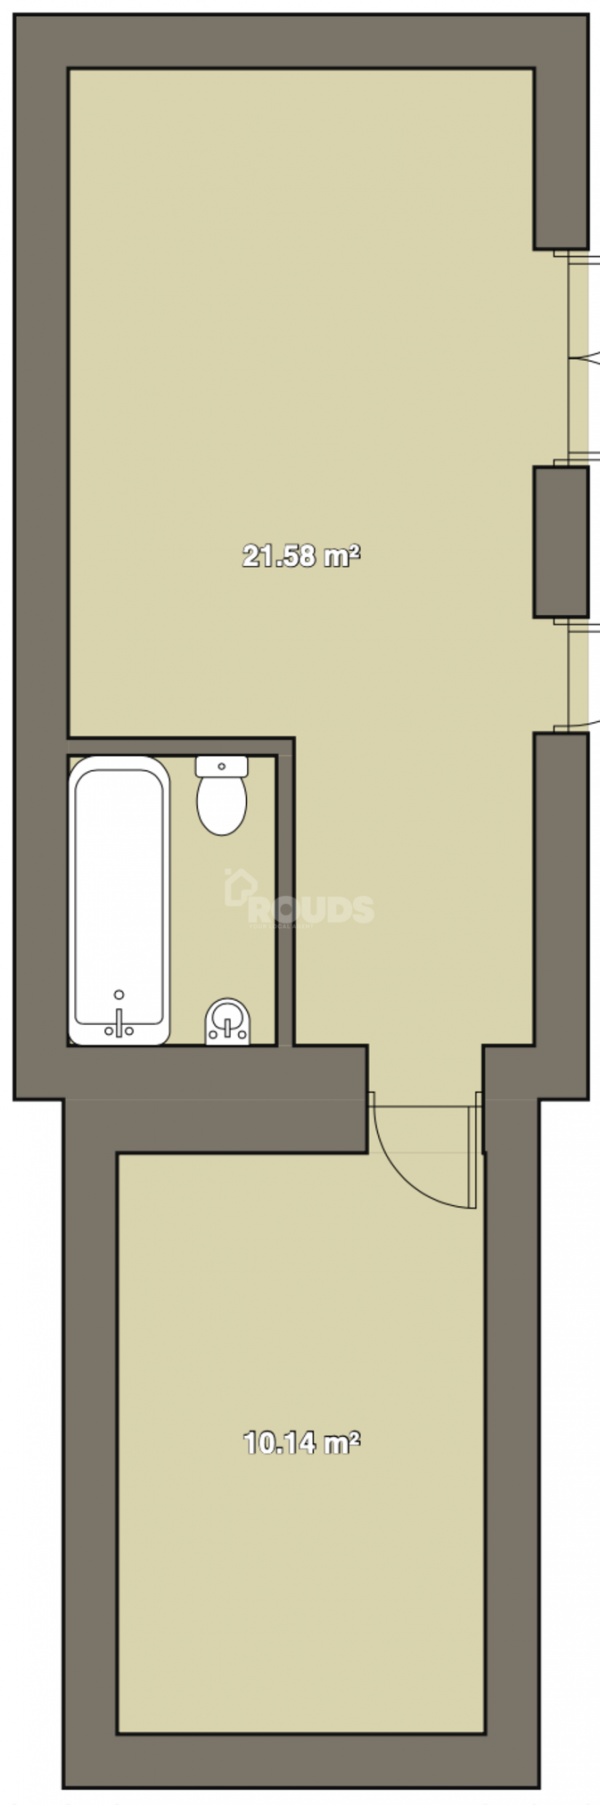 Floor Plan Image for 1 Bedroom Flat to Rent in Hazelwell Street, Birmingham, B30 2JX